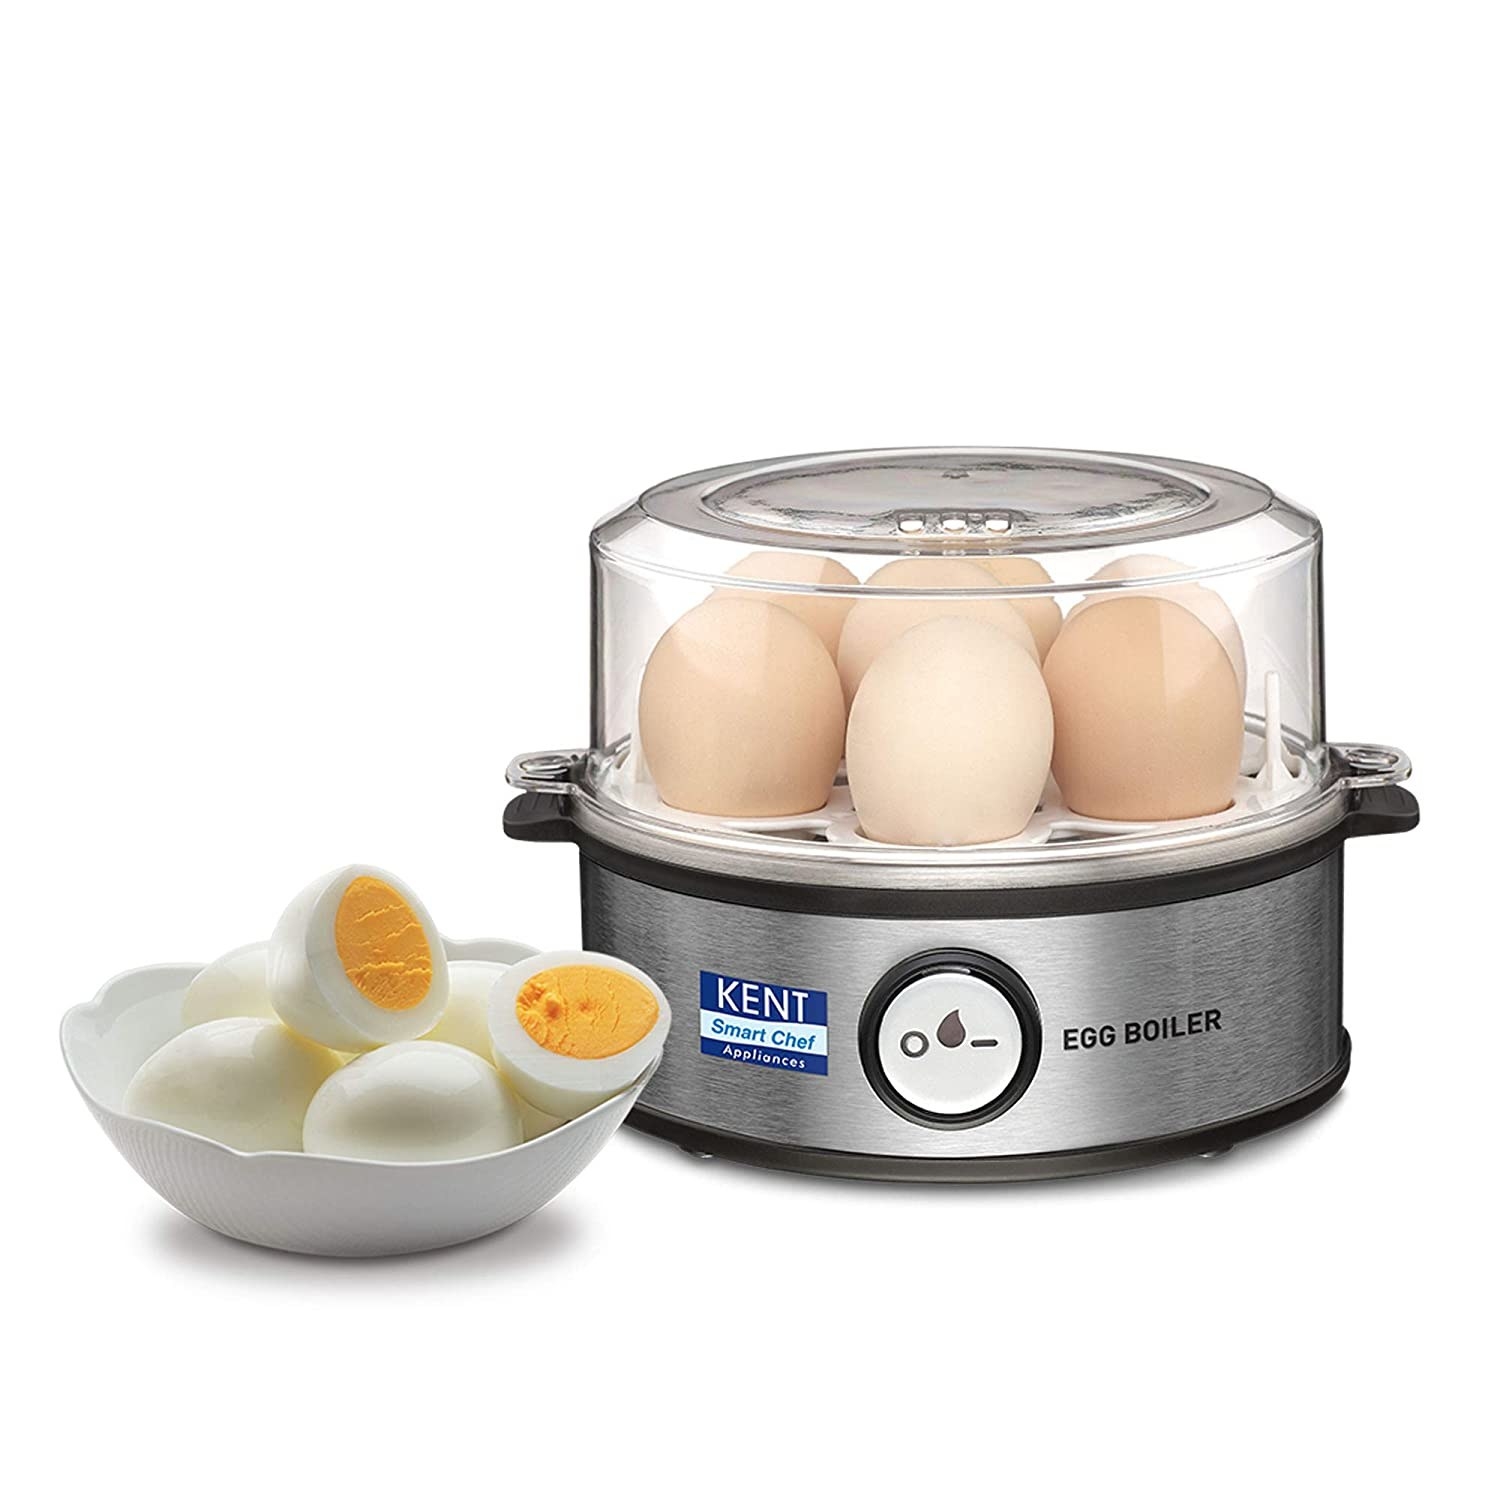 An egg boiler 